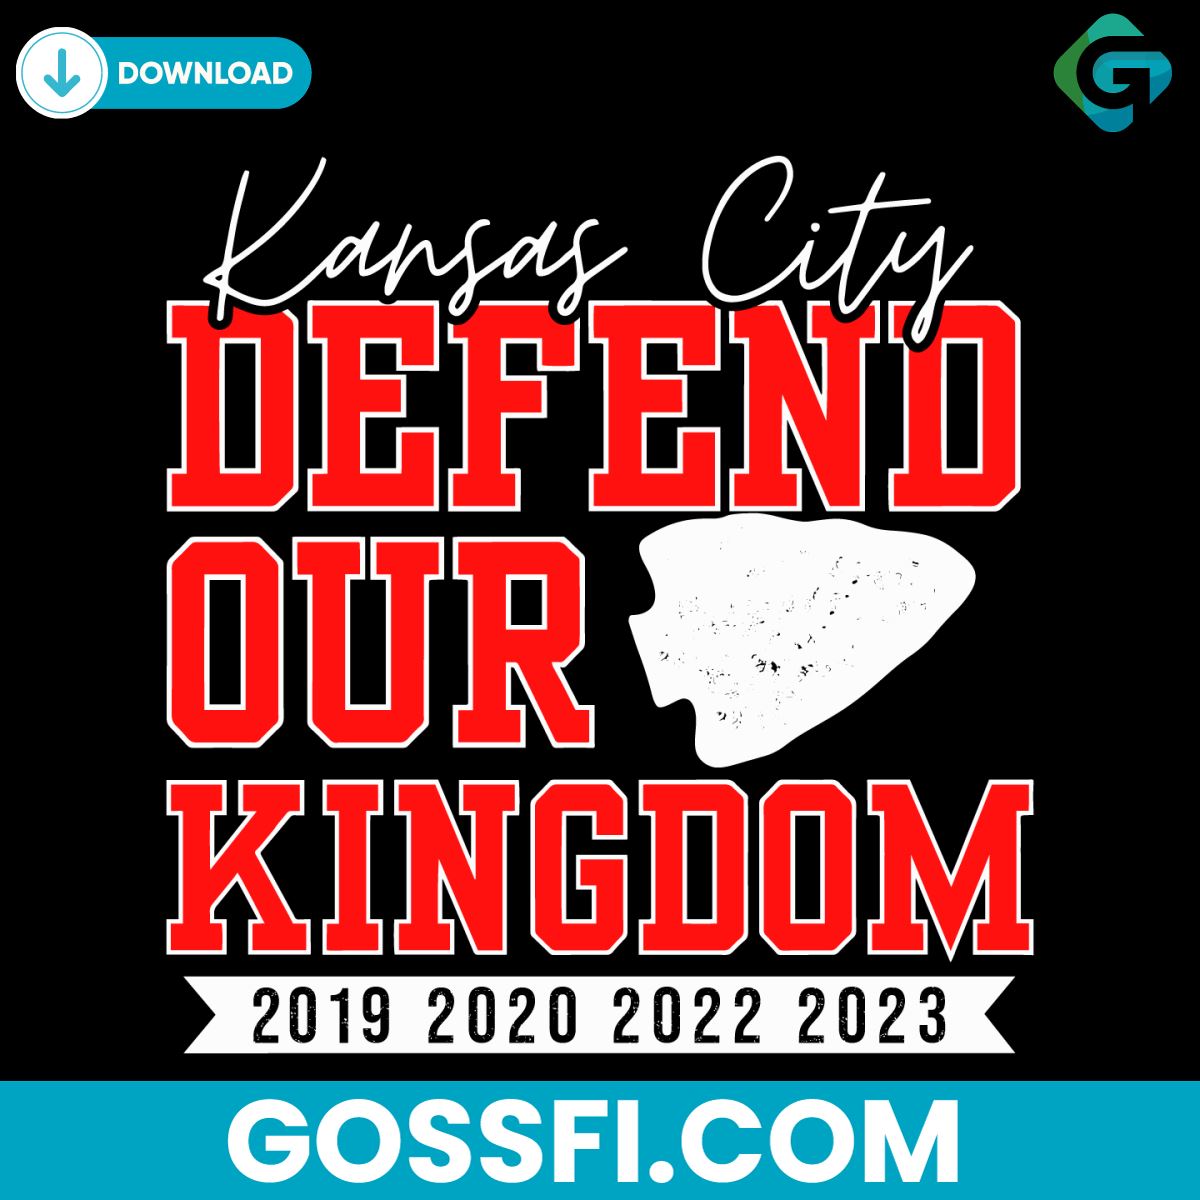 kansas-city-defend-our-kingdom-svg-digital-download